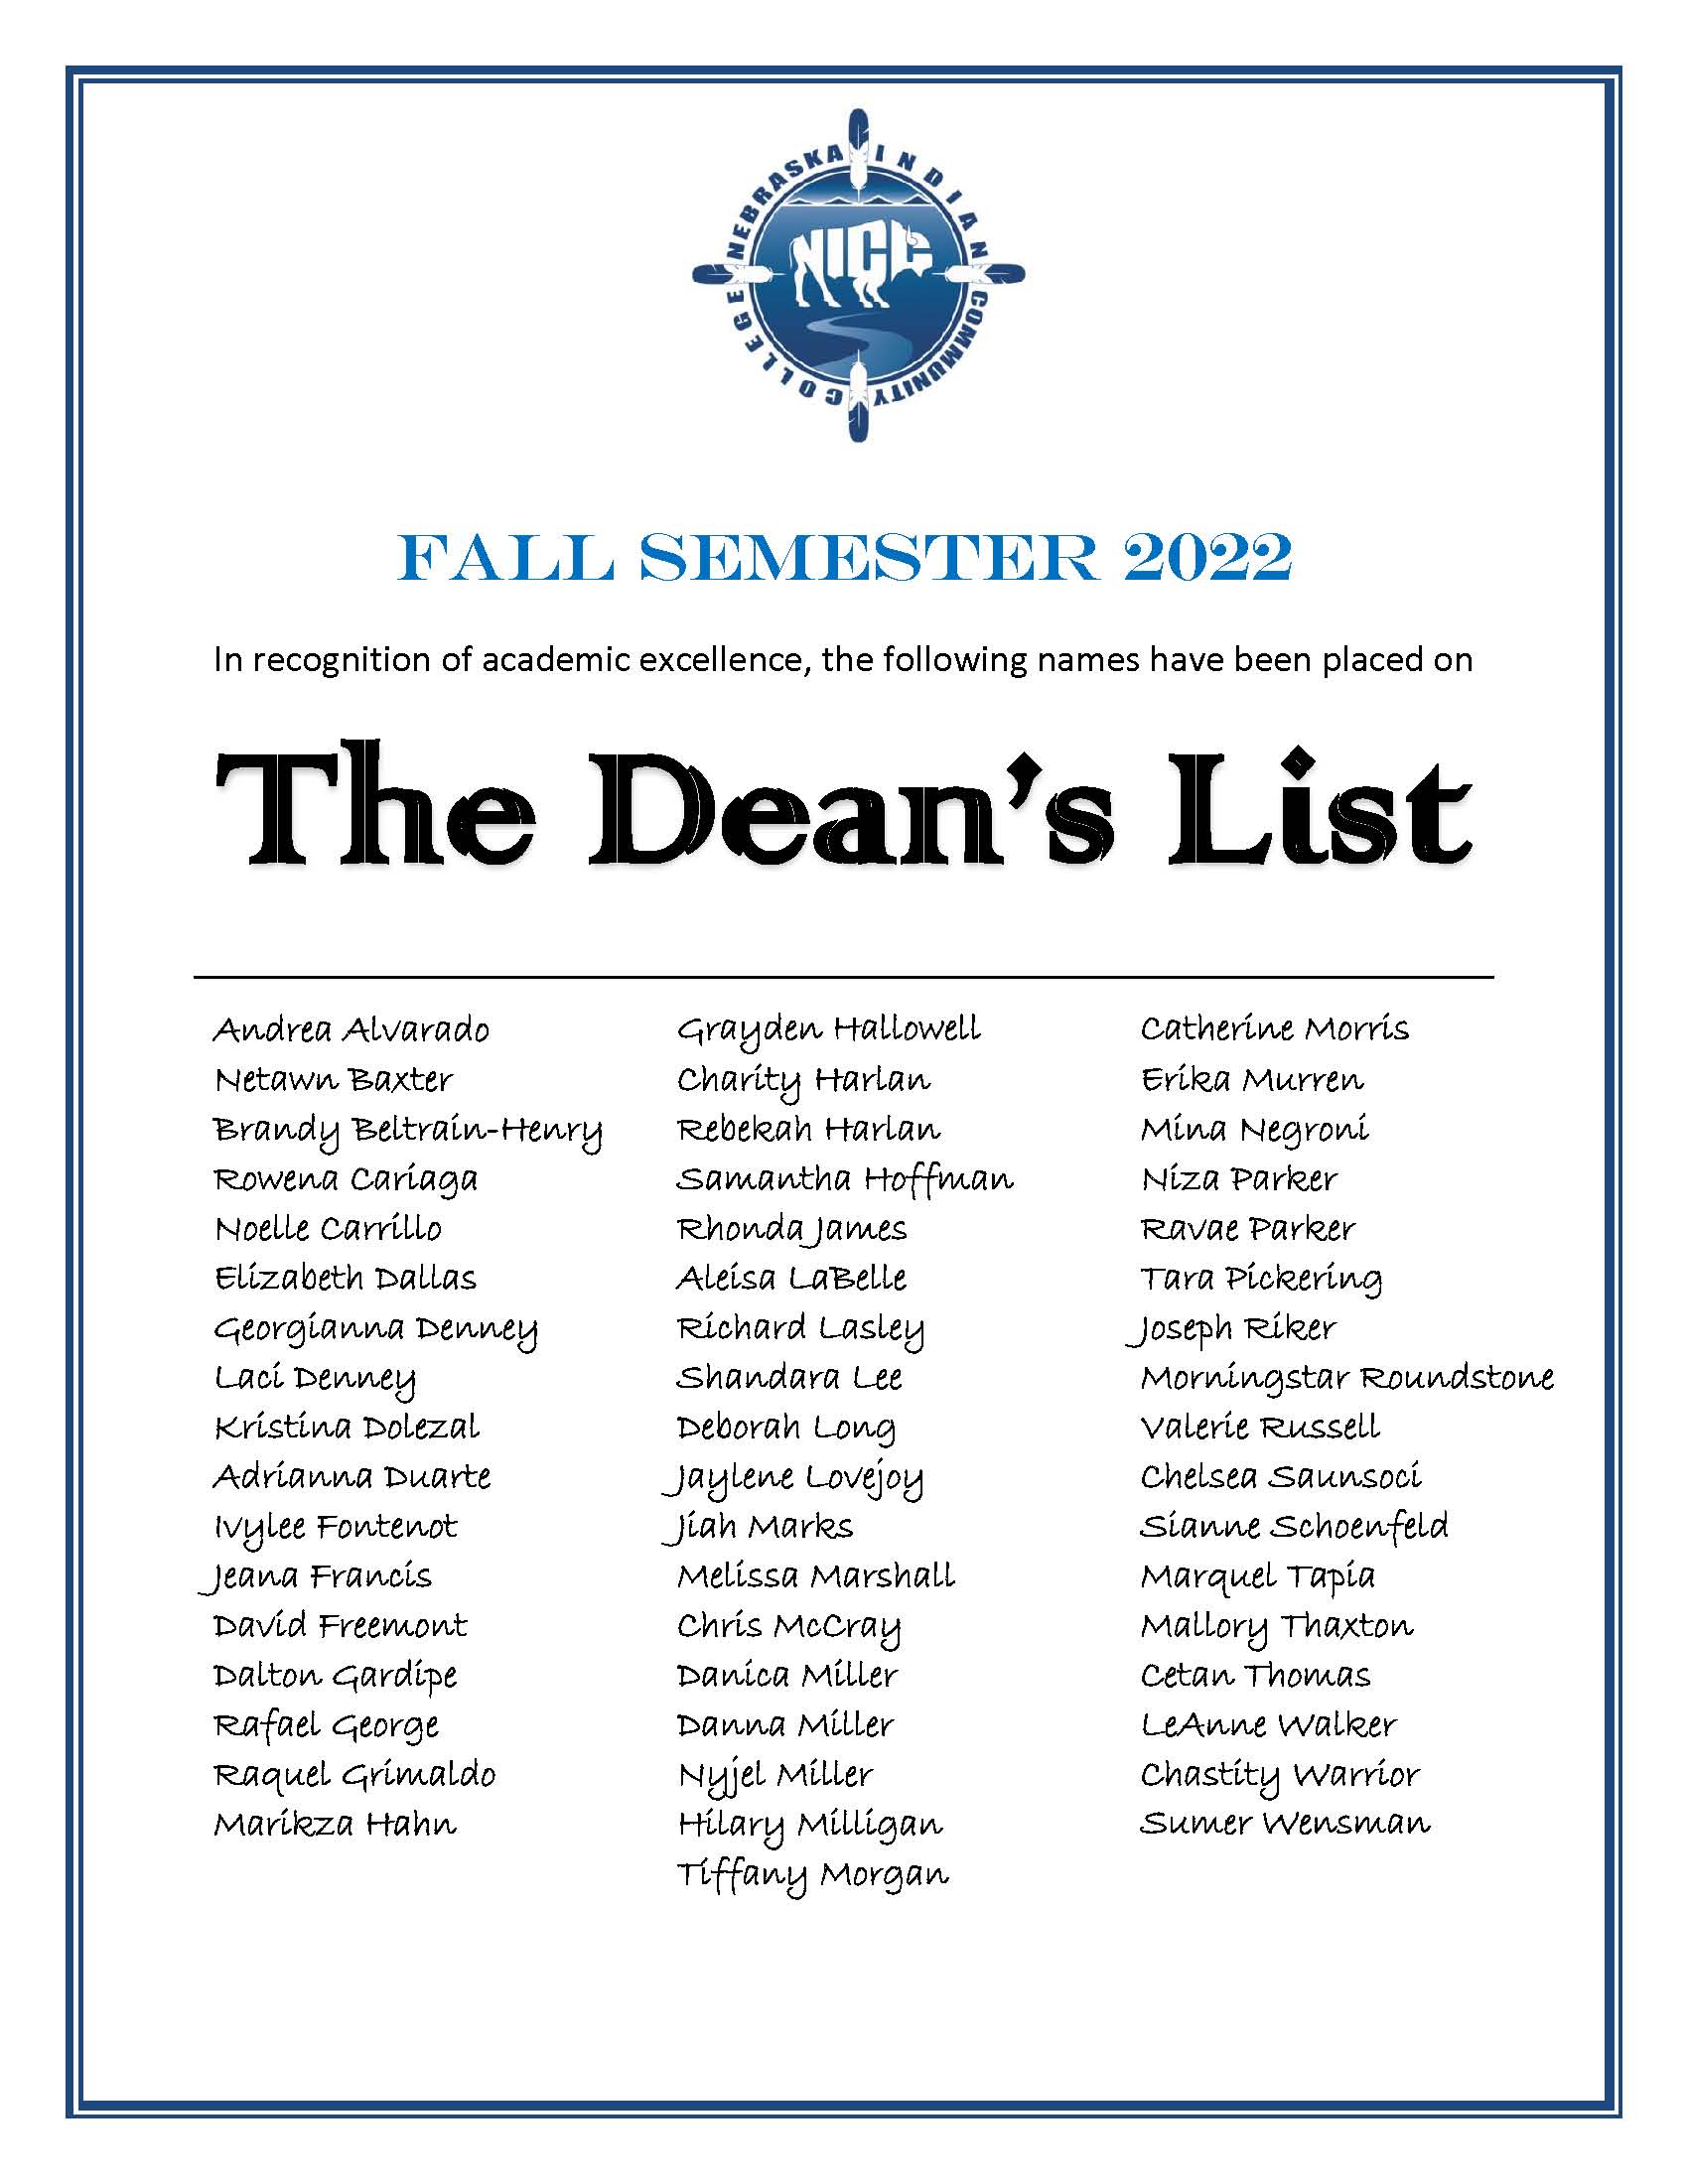 Fall 2022 Dean's List